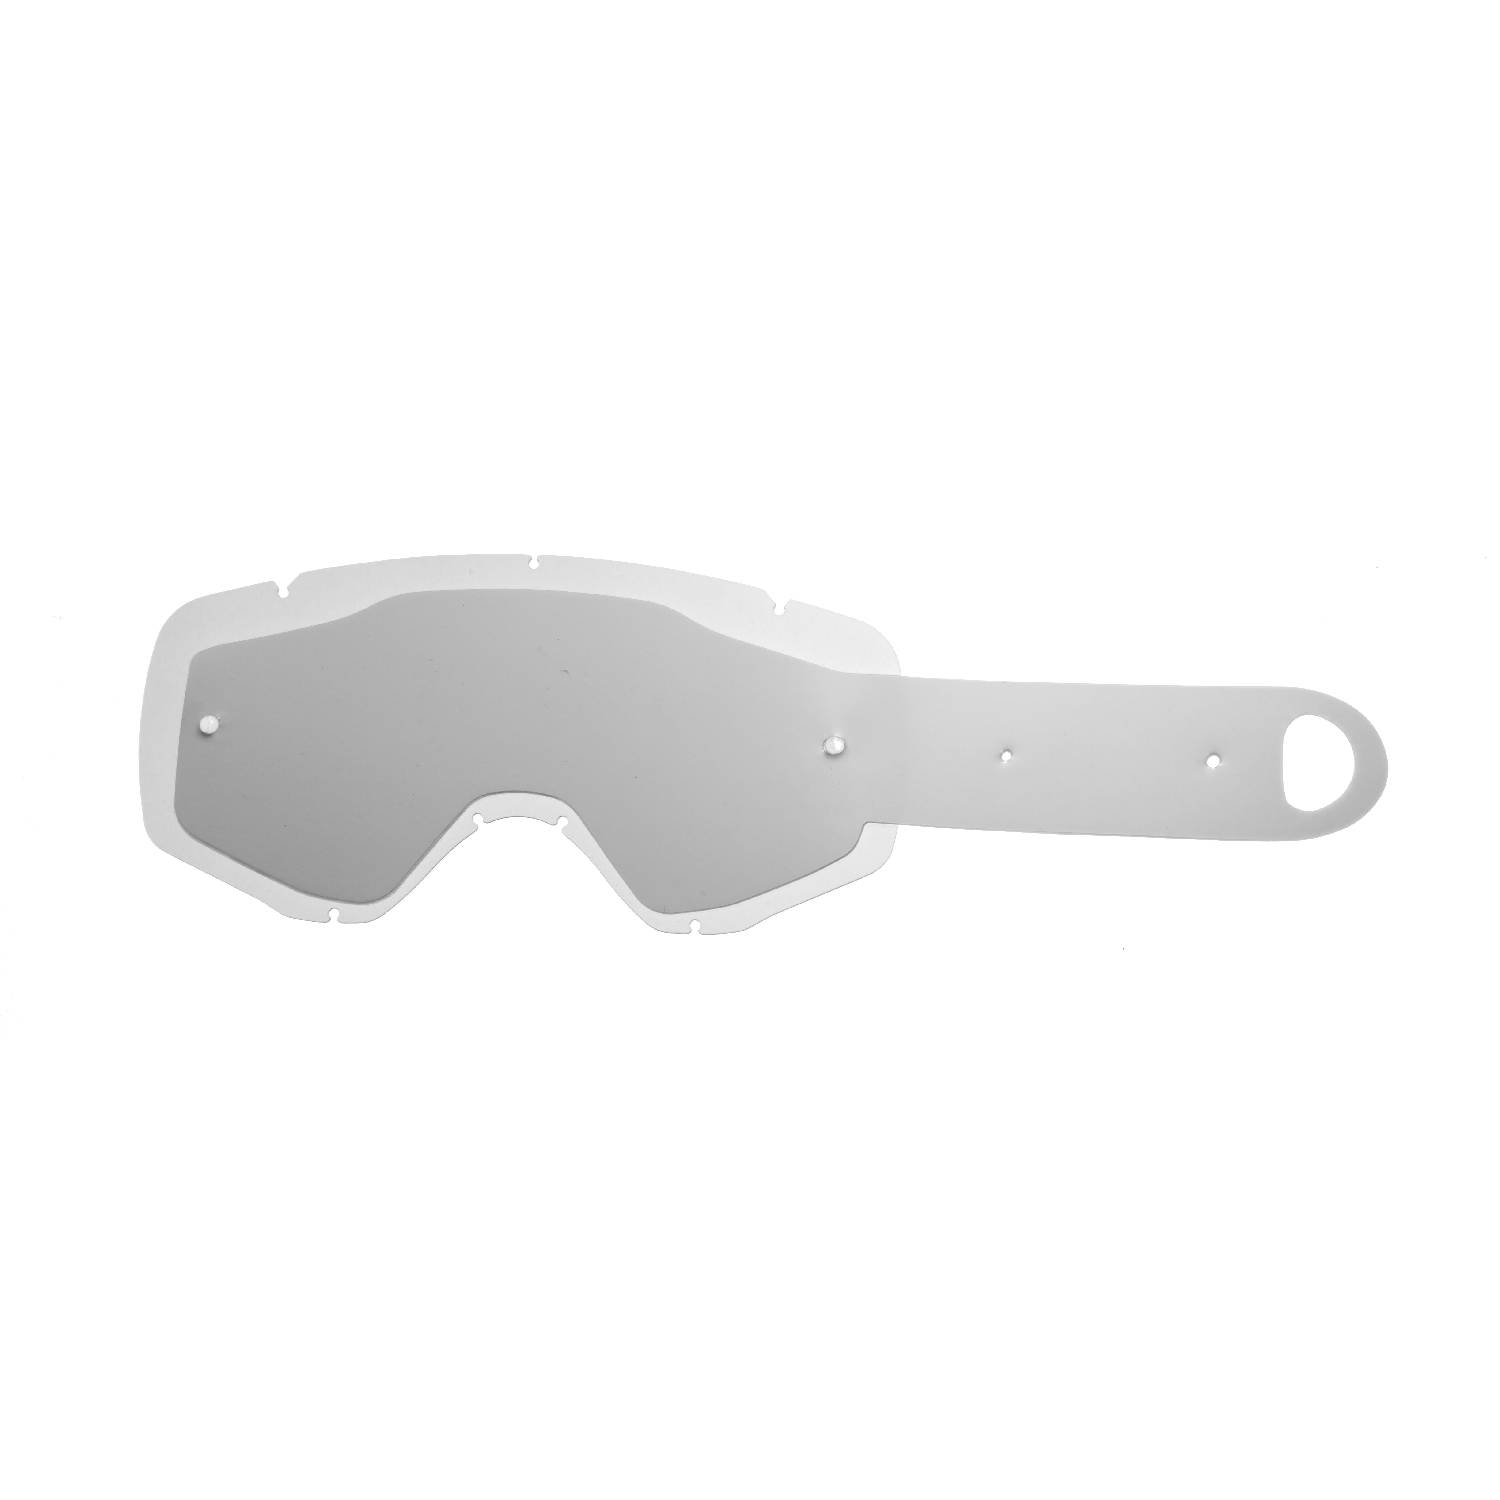 Lente trasparente + 10 Strappi (Combo) compatibile per occhiale/maschera cross Ethen Zerosei GP/ Basic / Evolution/ Mud Mask